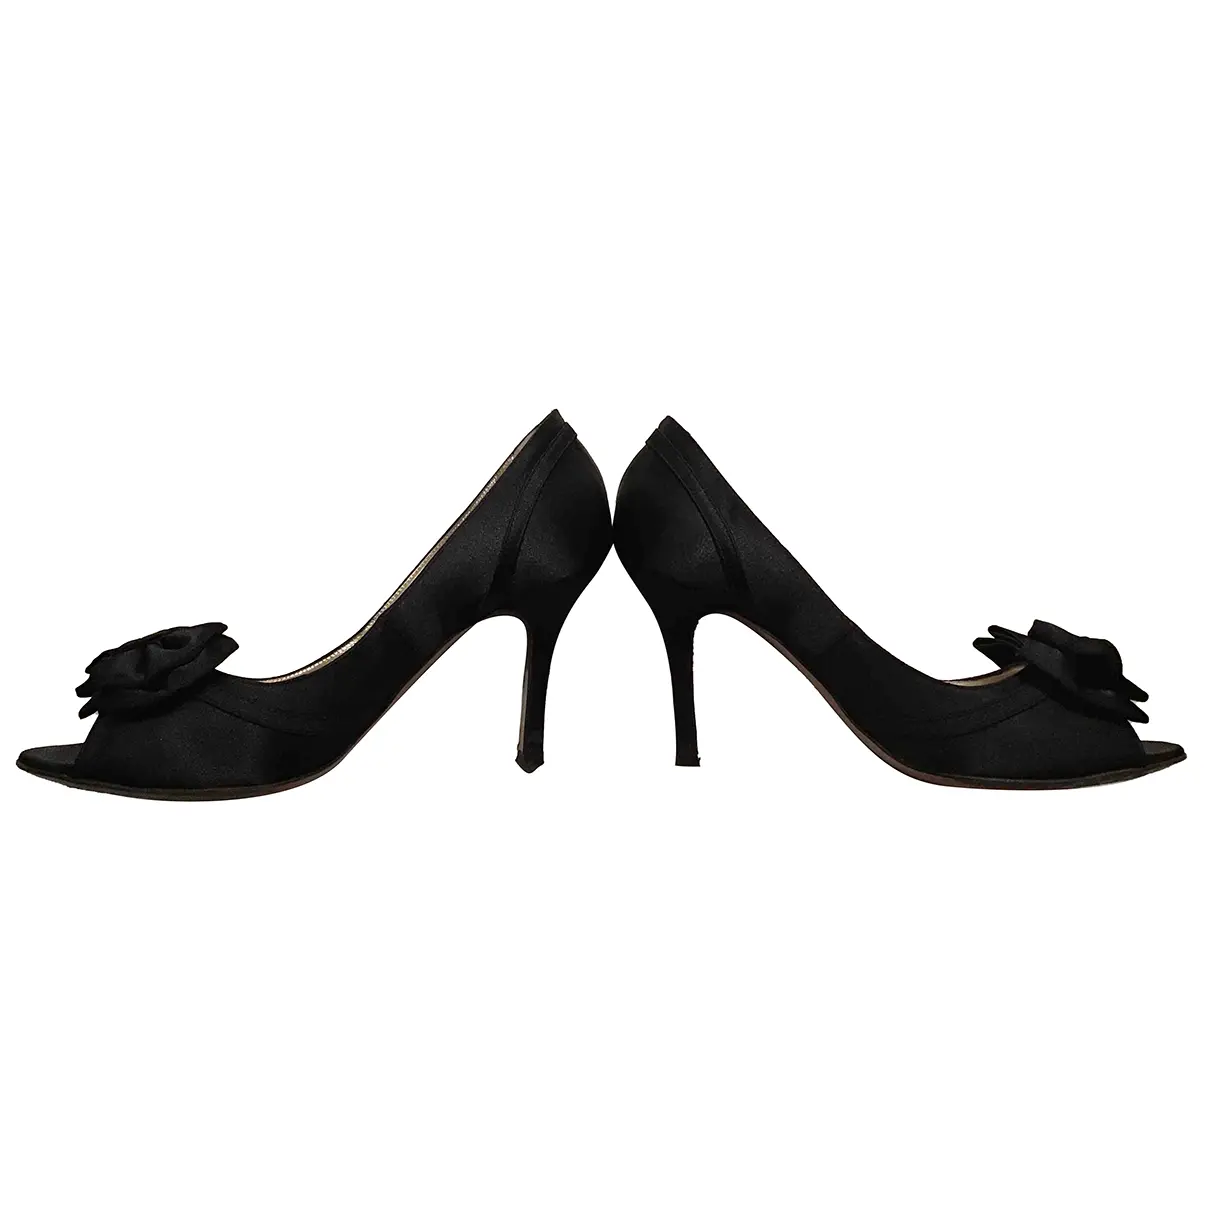 Cloth heels Luciano Padovan